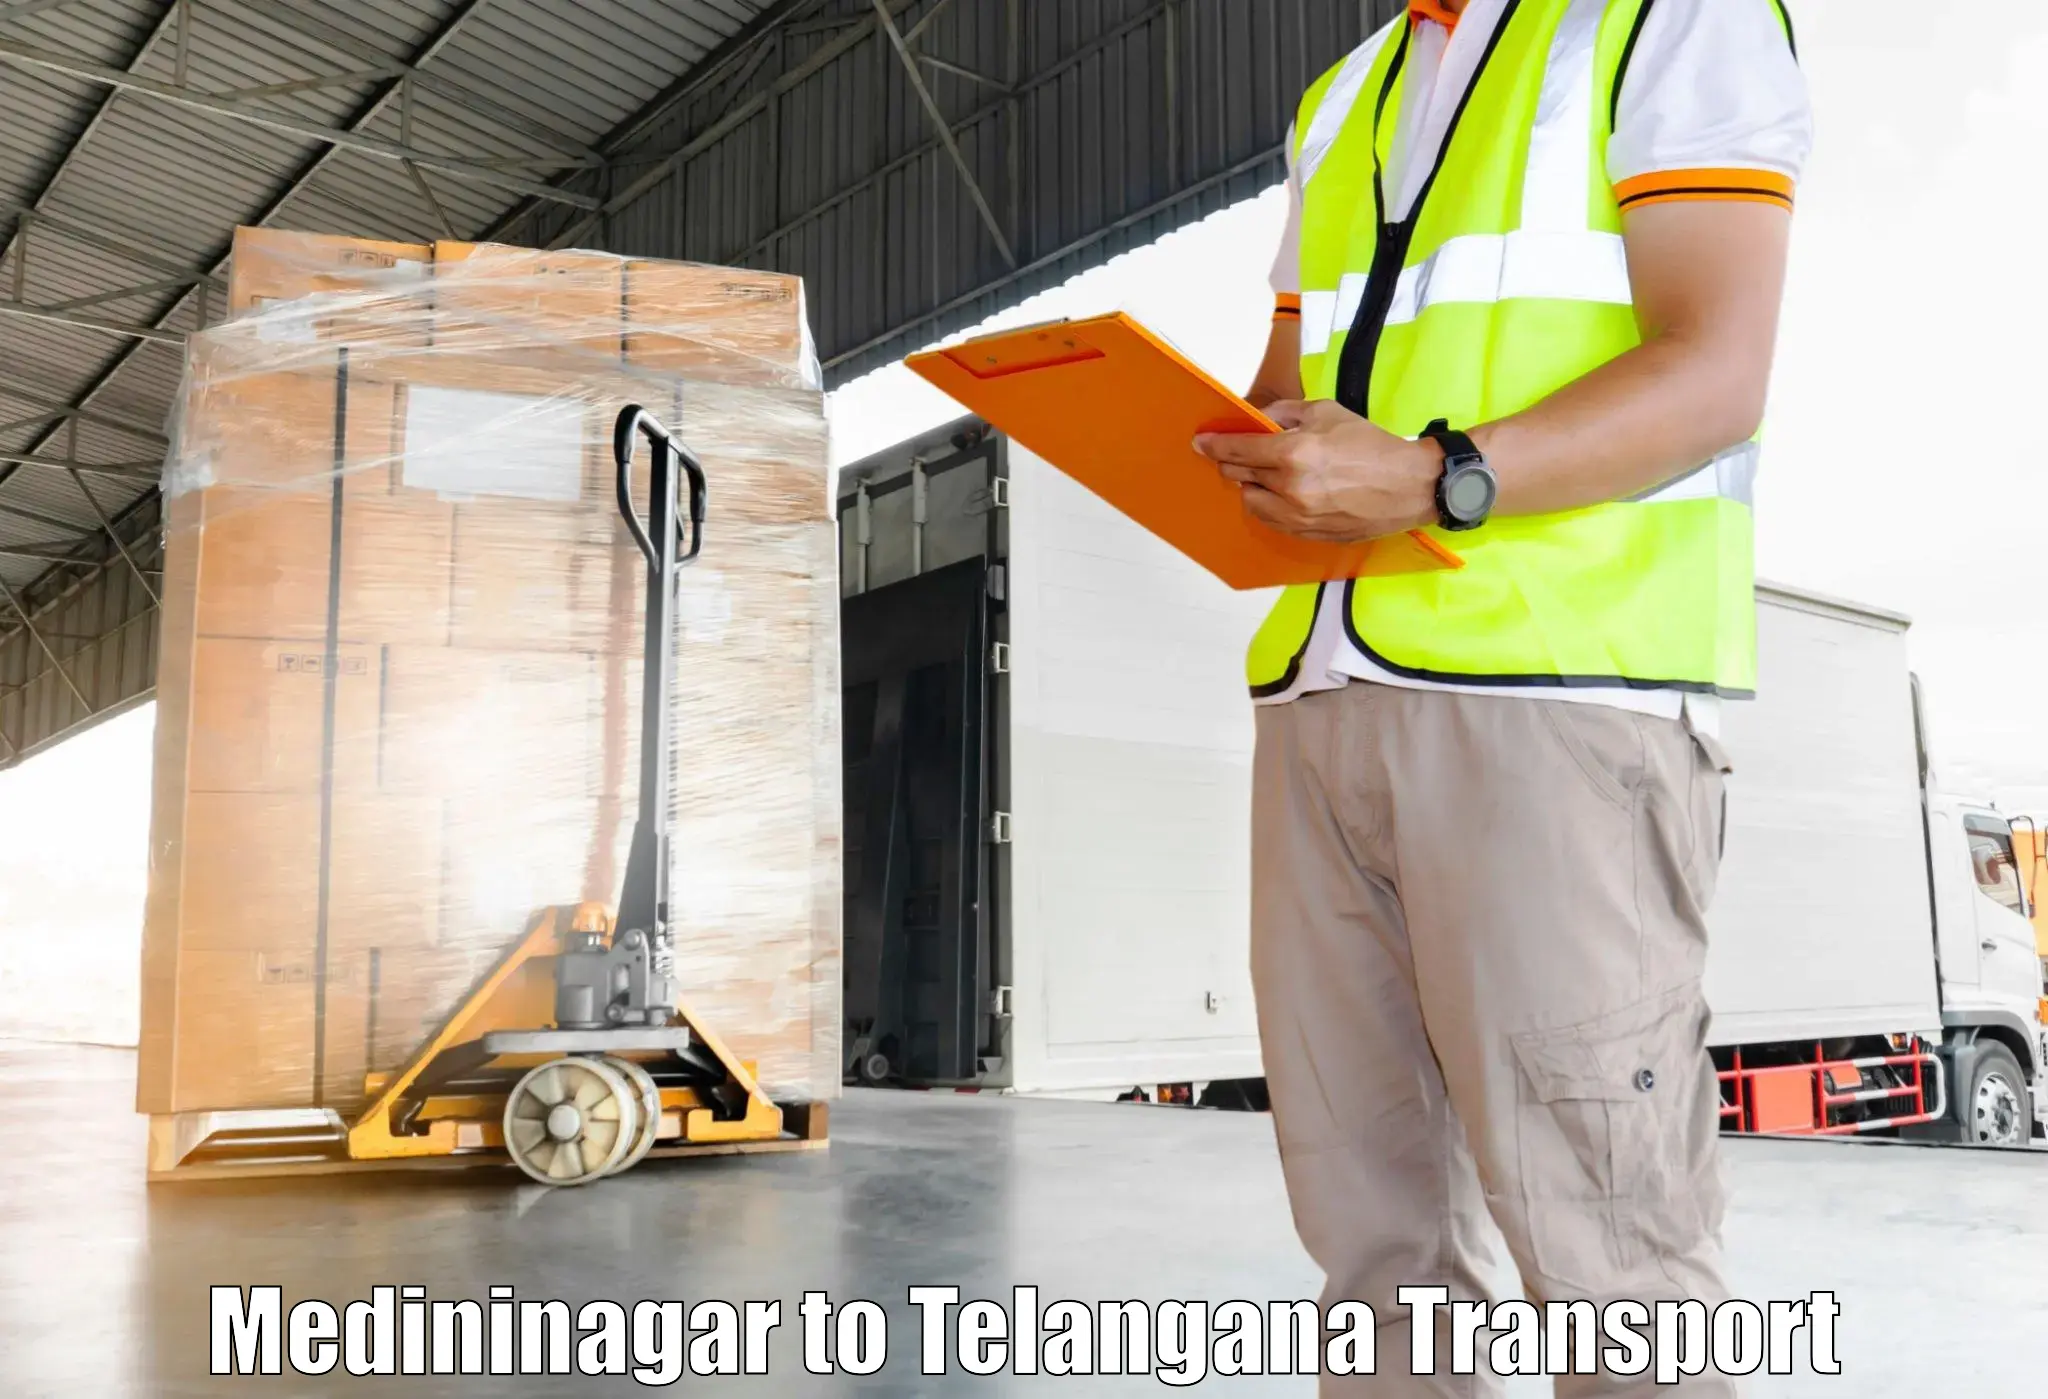 Pick up transport service in Medininagar to Tadvai